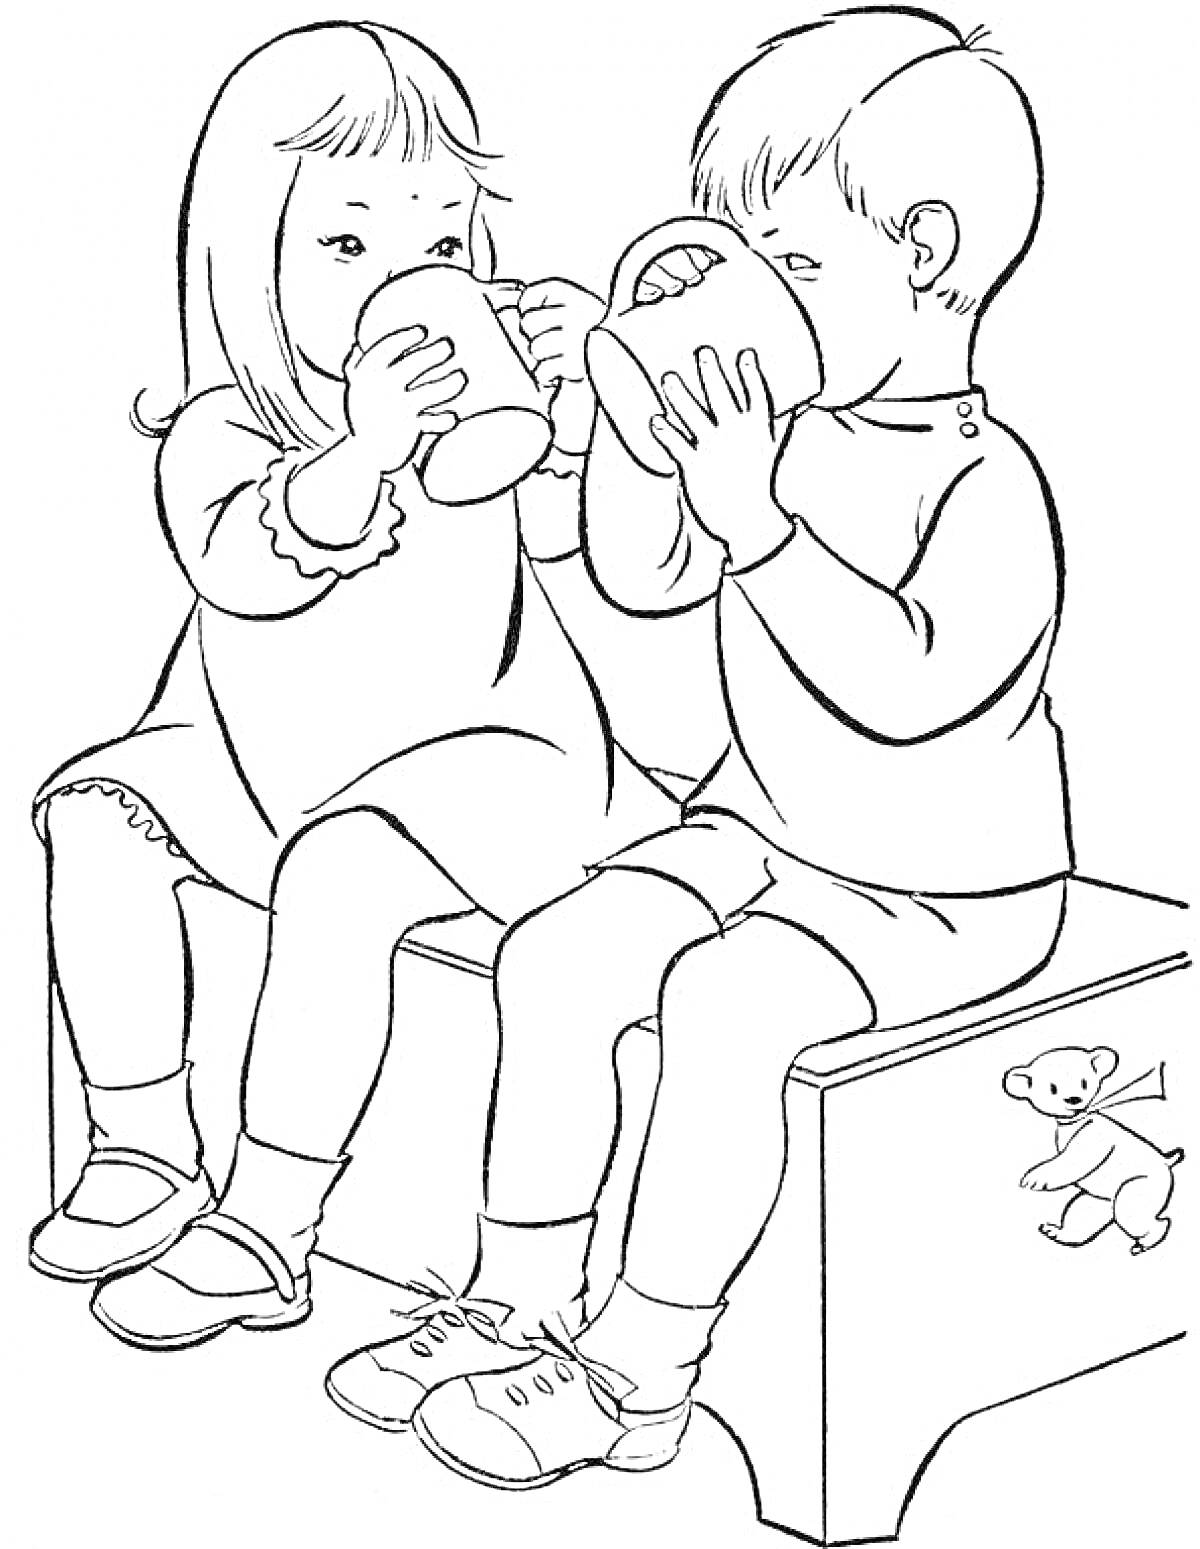 Два ребенка пьют из чашек, сидя на скамейке, с игрушкой-медвежонком на заднем плане